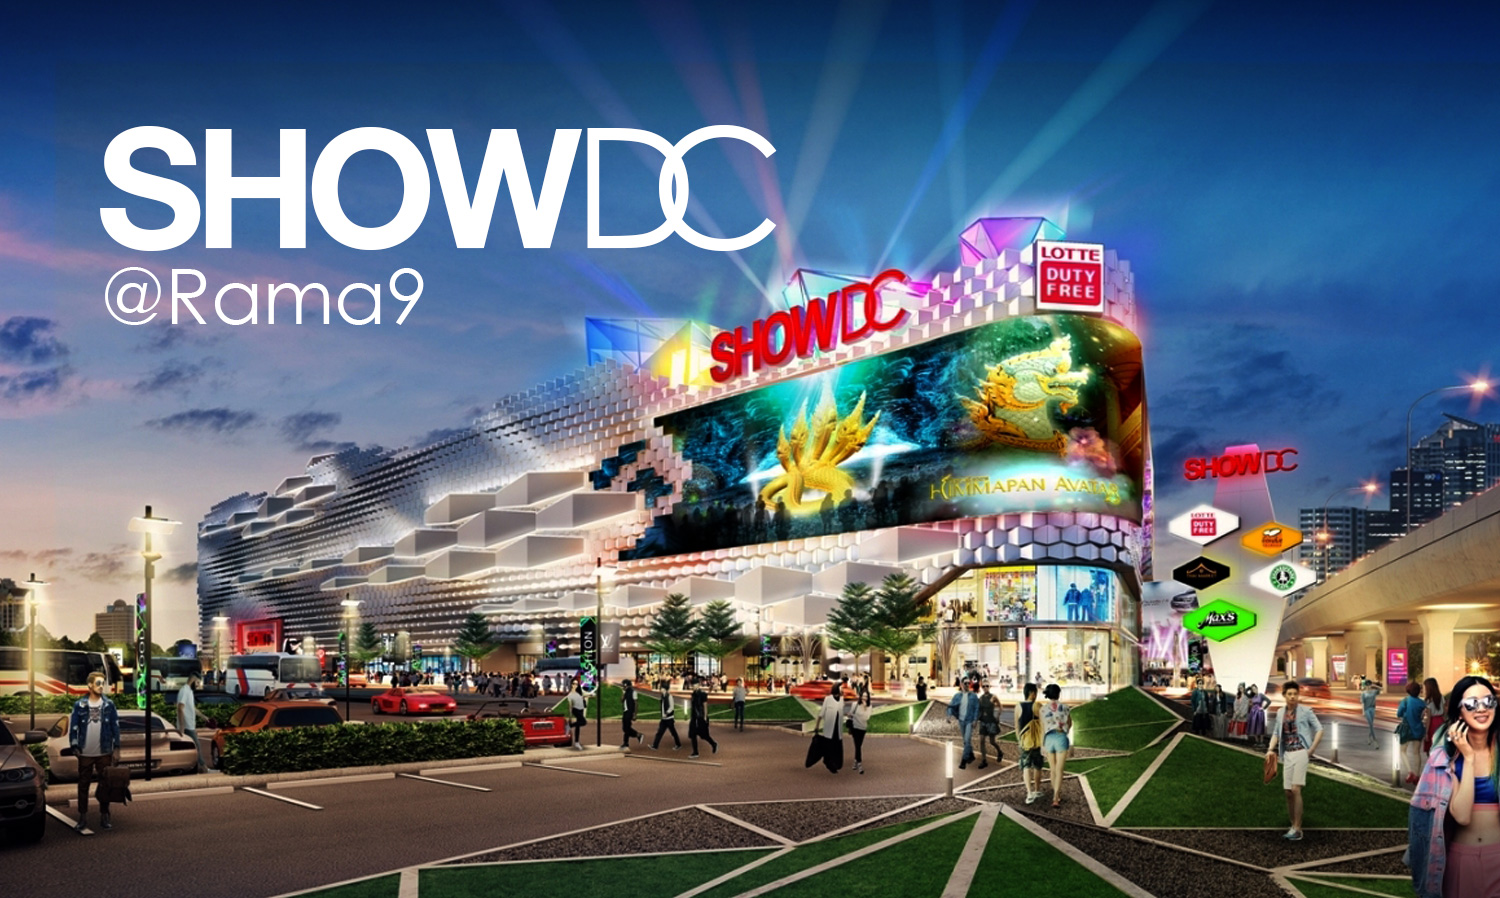 Show DC @Rama9 – Shopping & Entertainment Center – 27 Rai - 150,000 Sq.m.